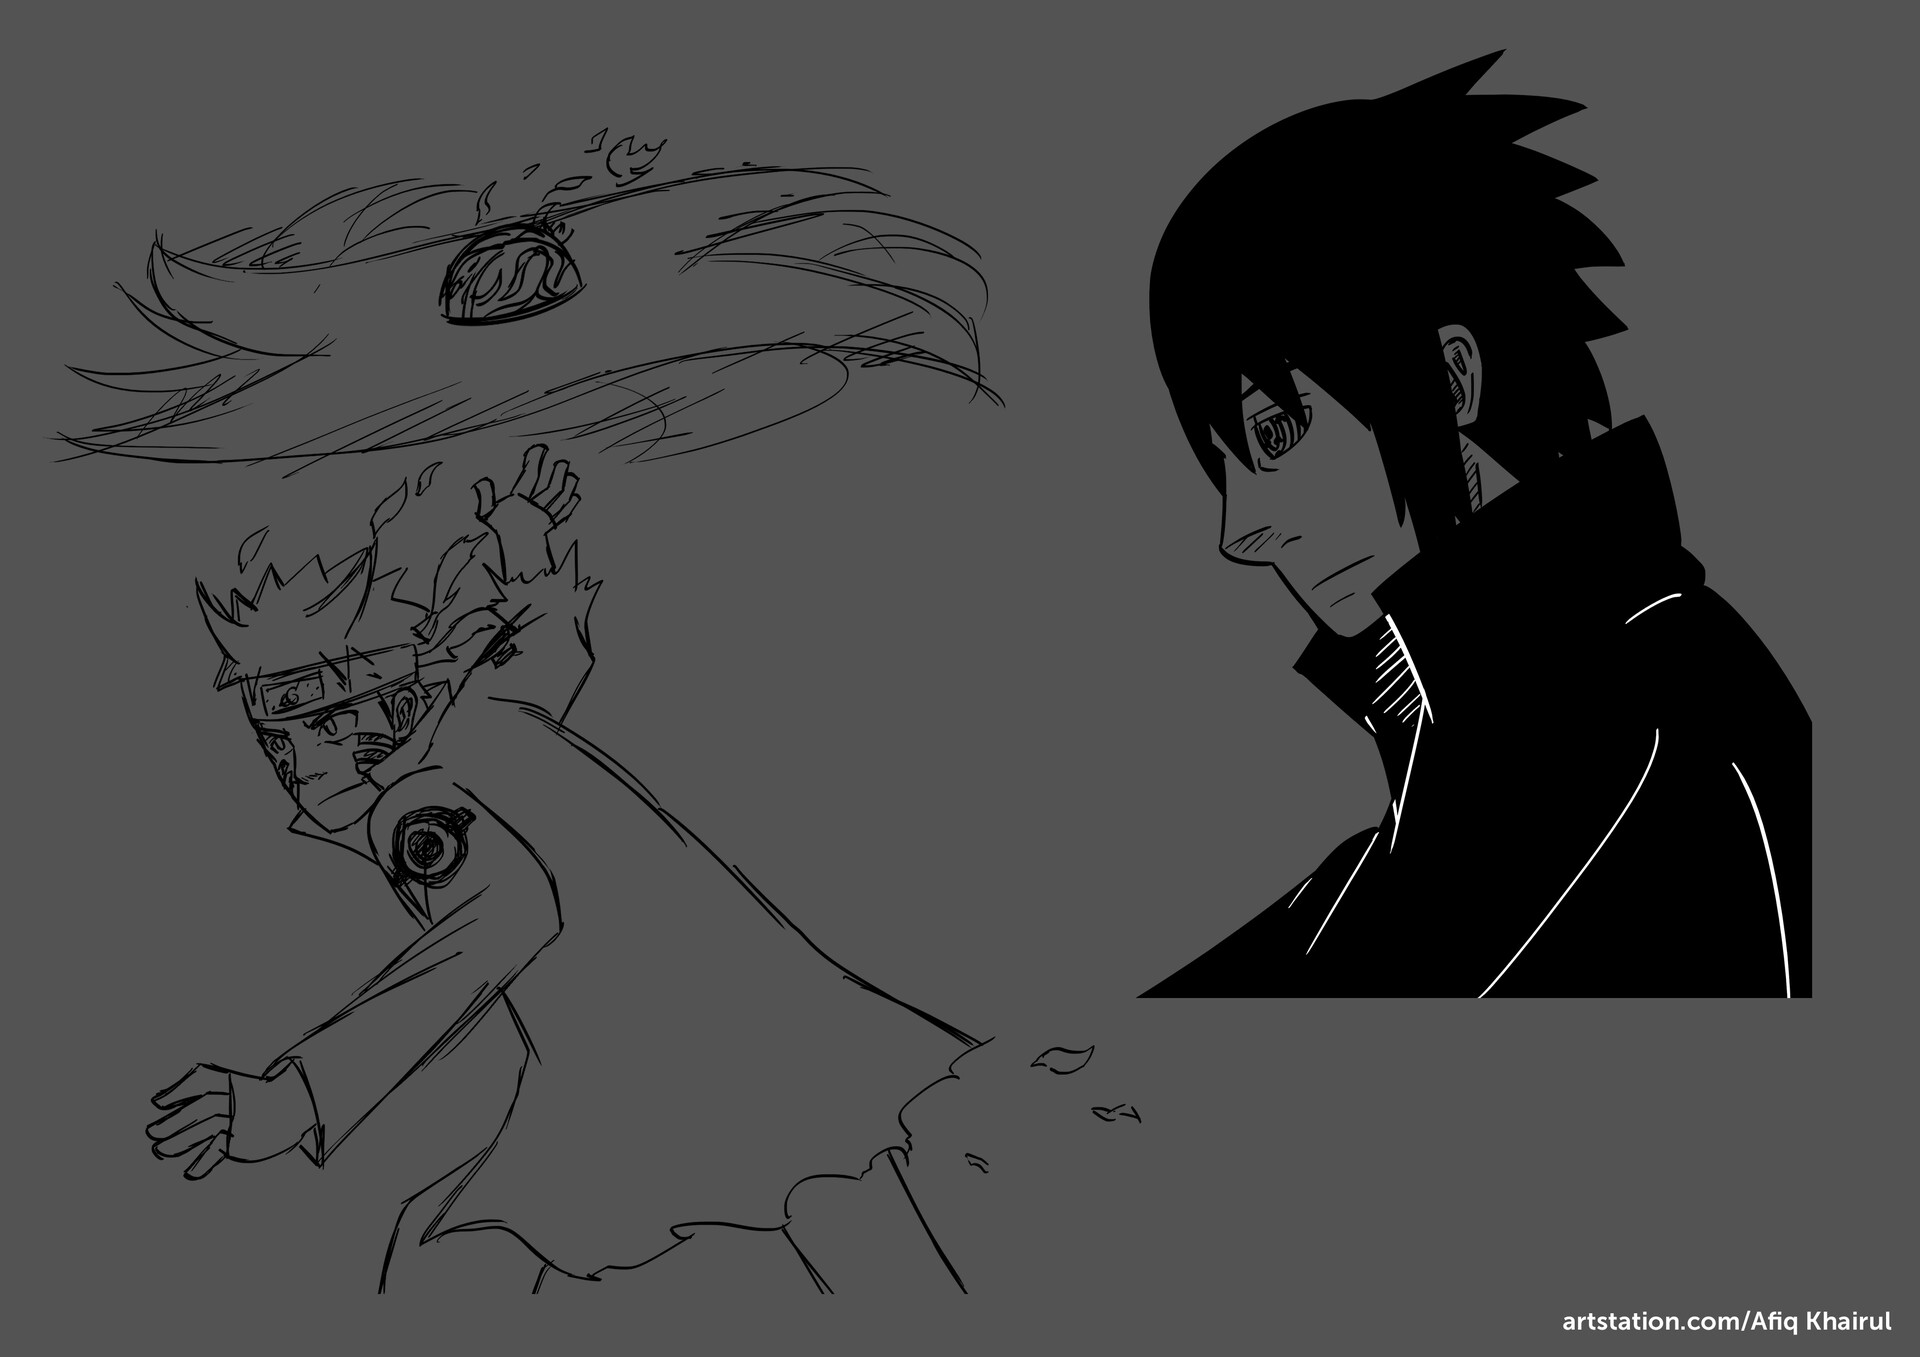 ArtStation - Naruto anime manga drawing